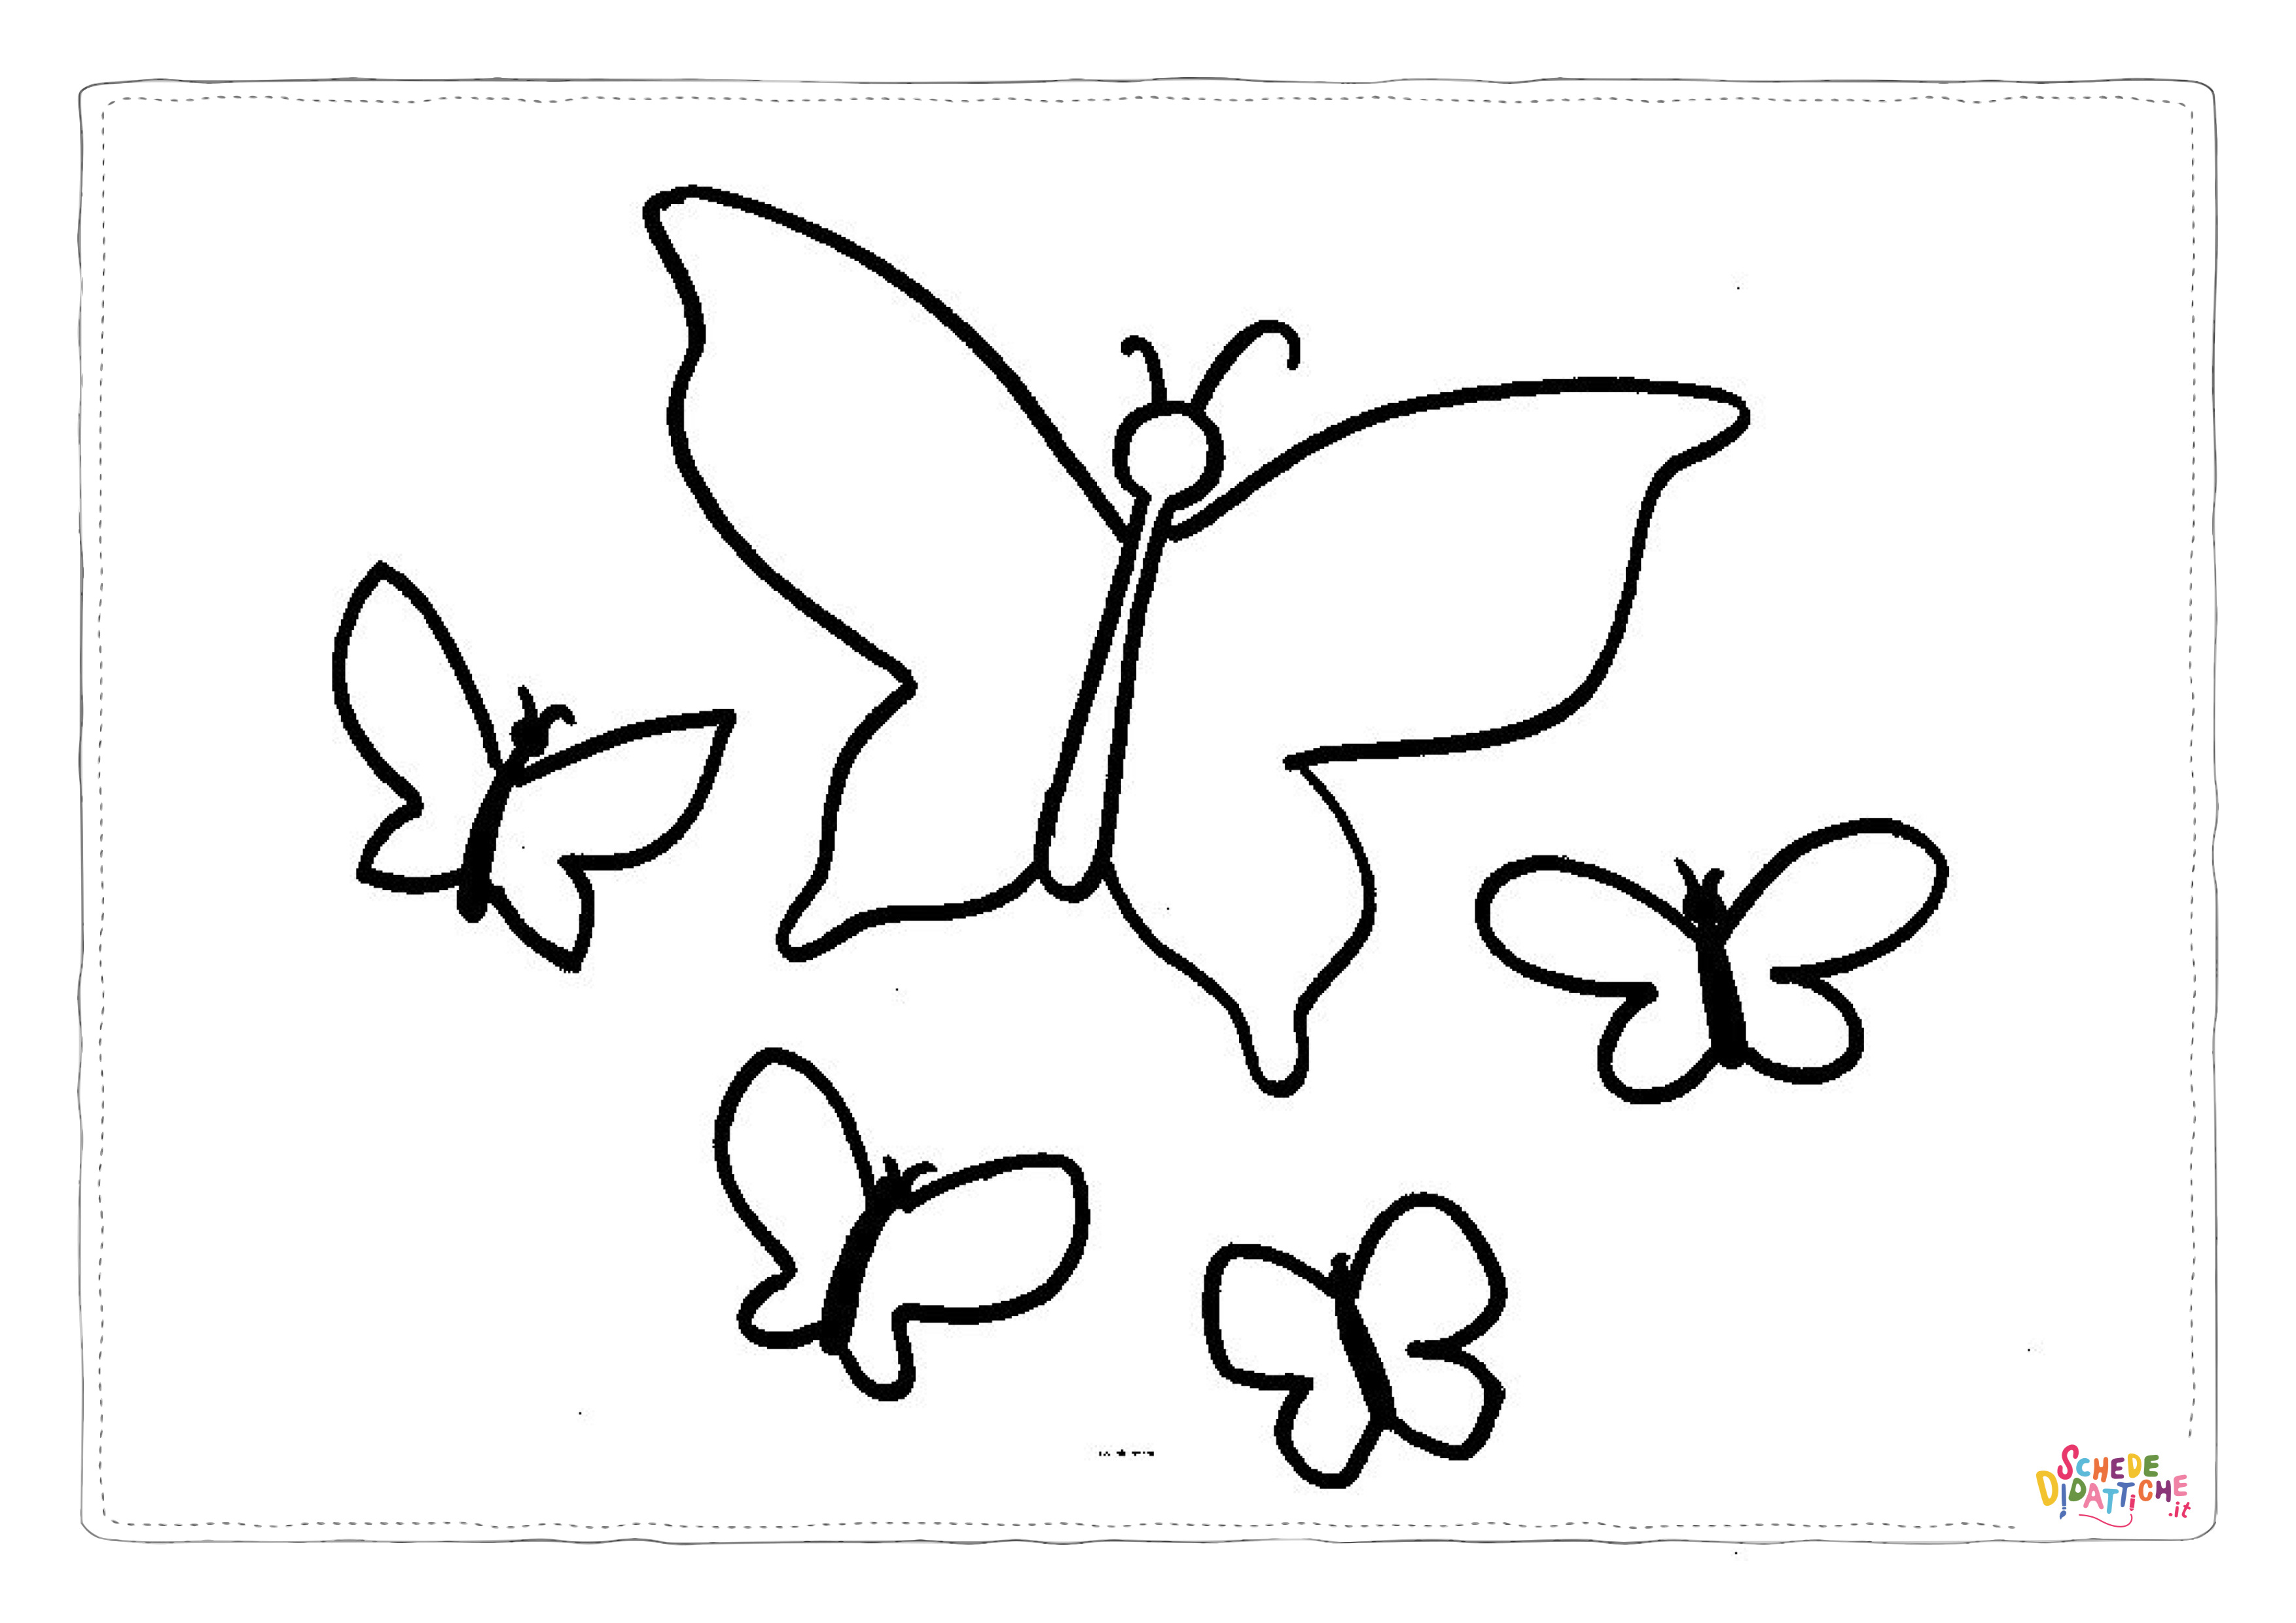 Disegno di farfalla da stampare e colorare 18